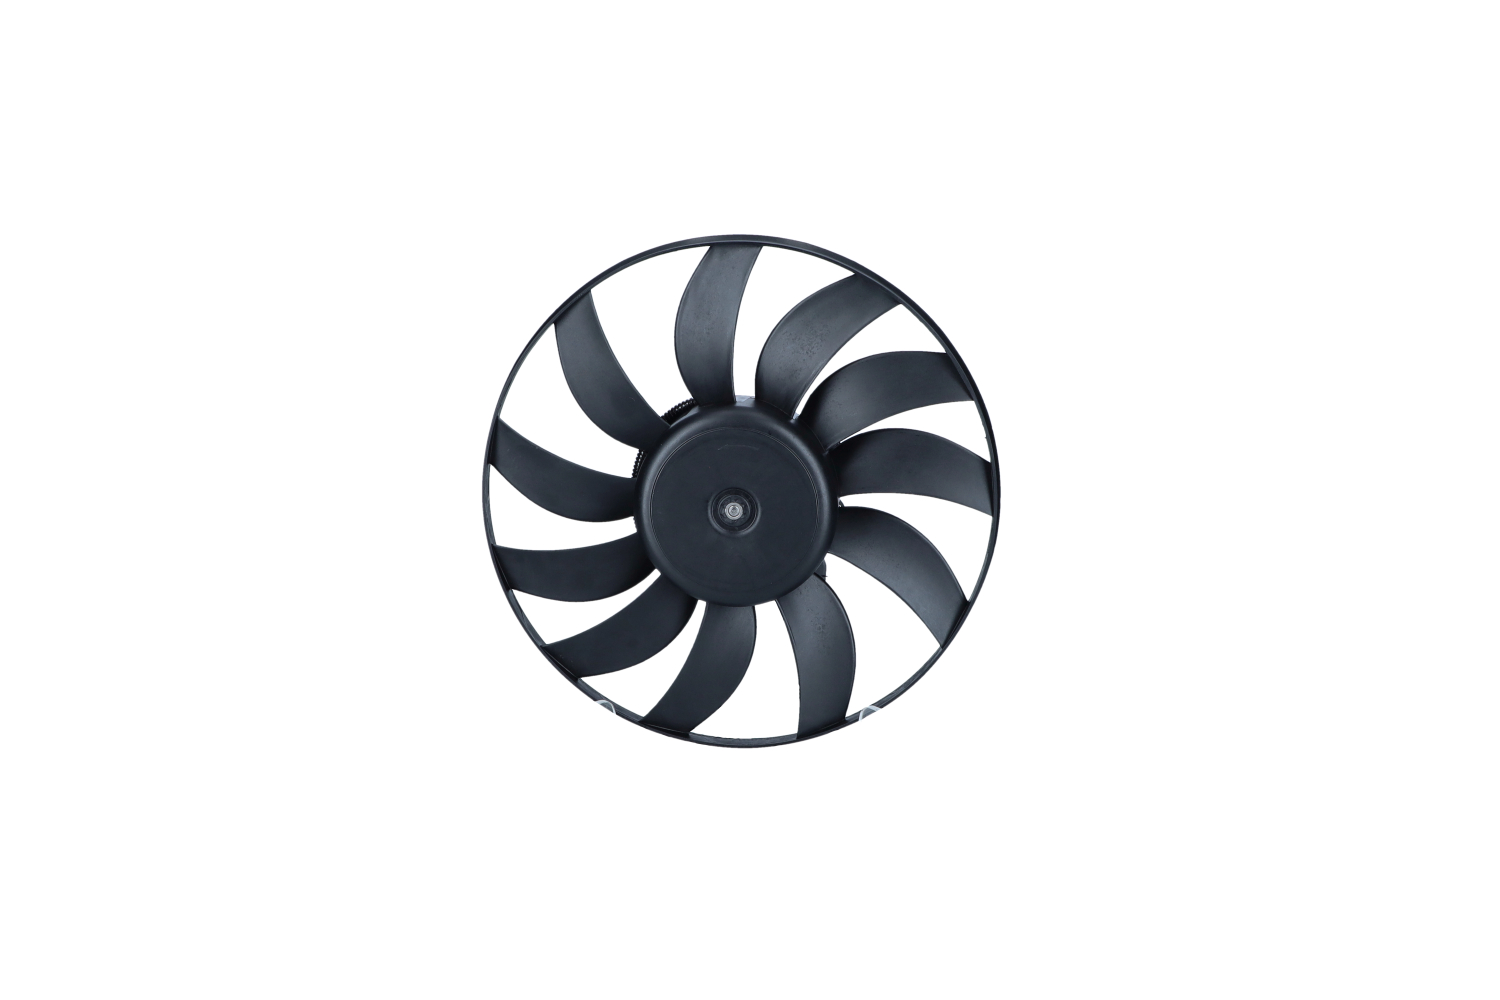 NRF 12V, 60/100W, without radiator fan shroud Cooling Fan 47881 buy